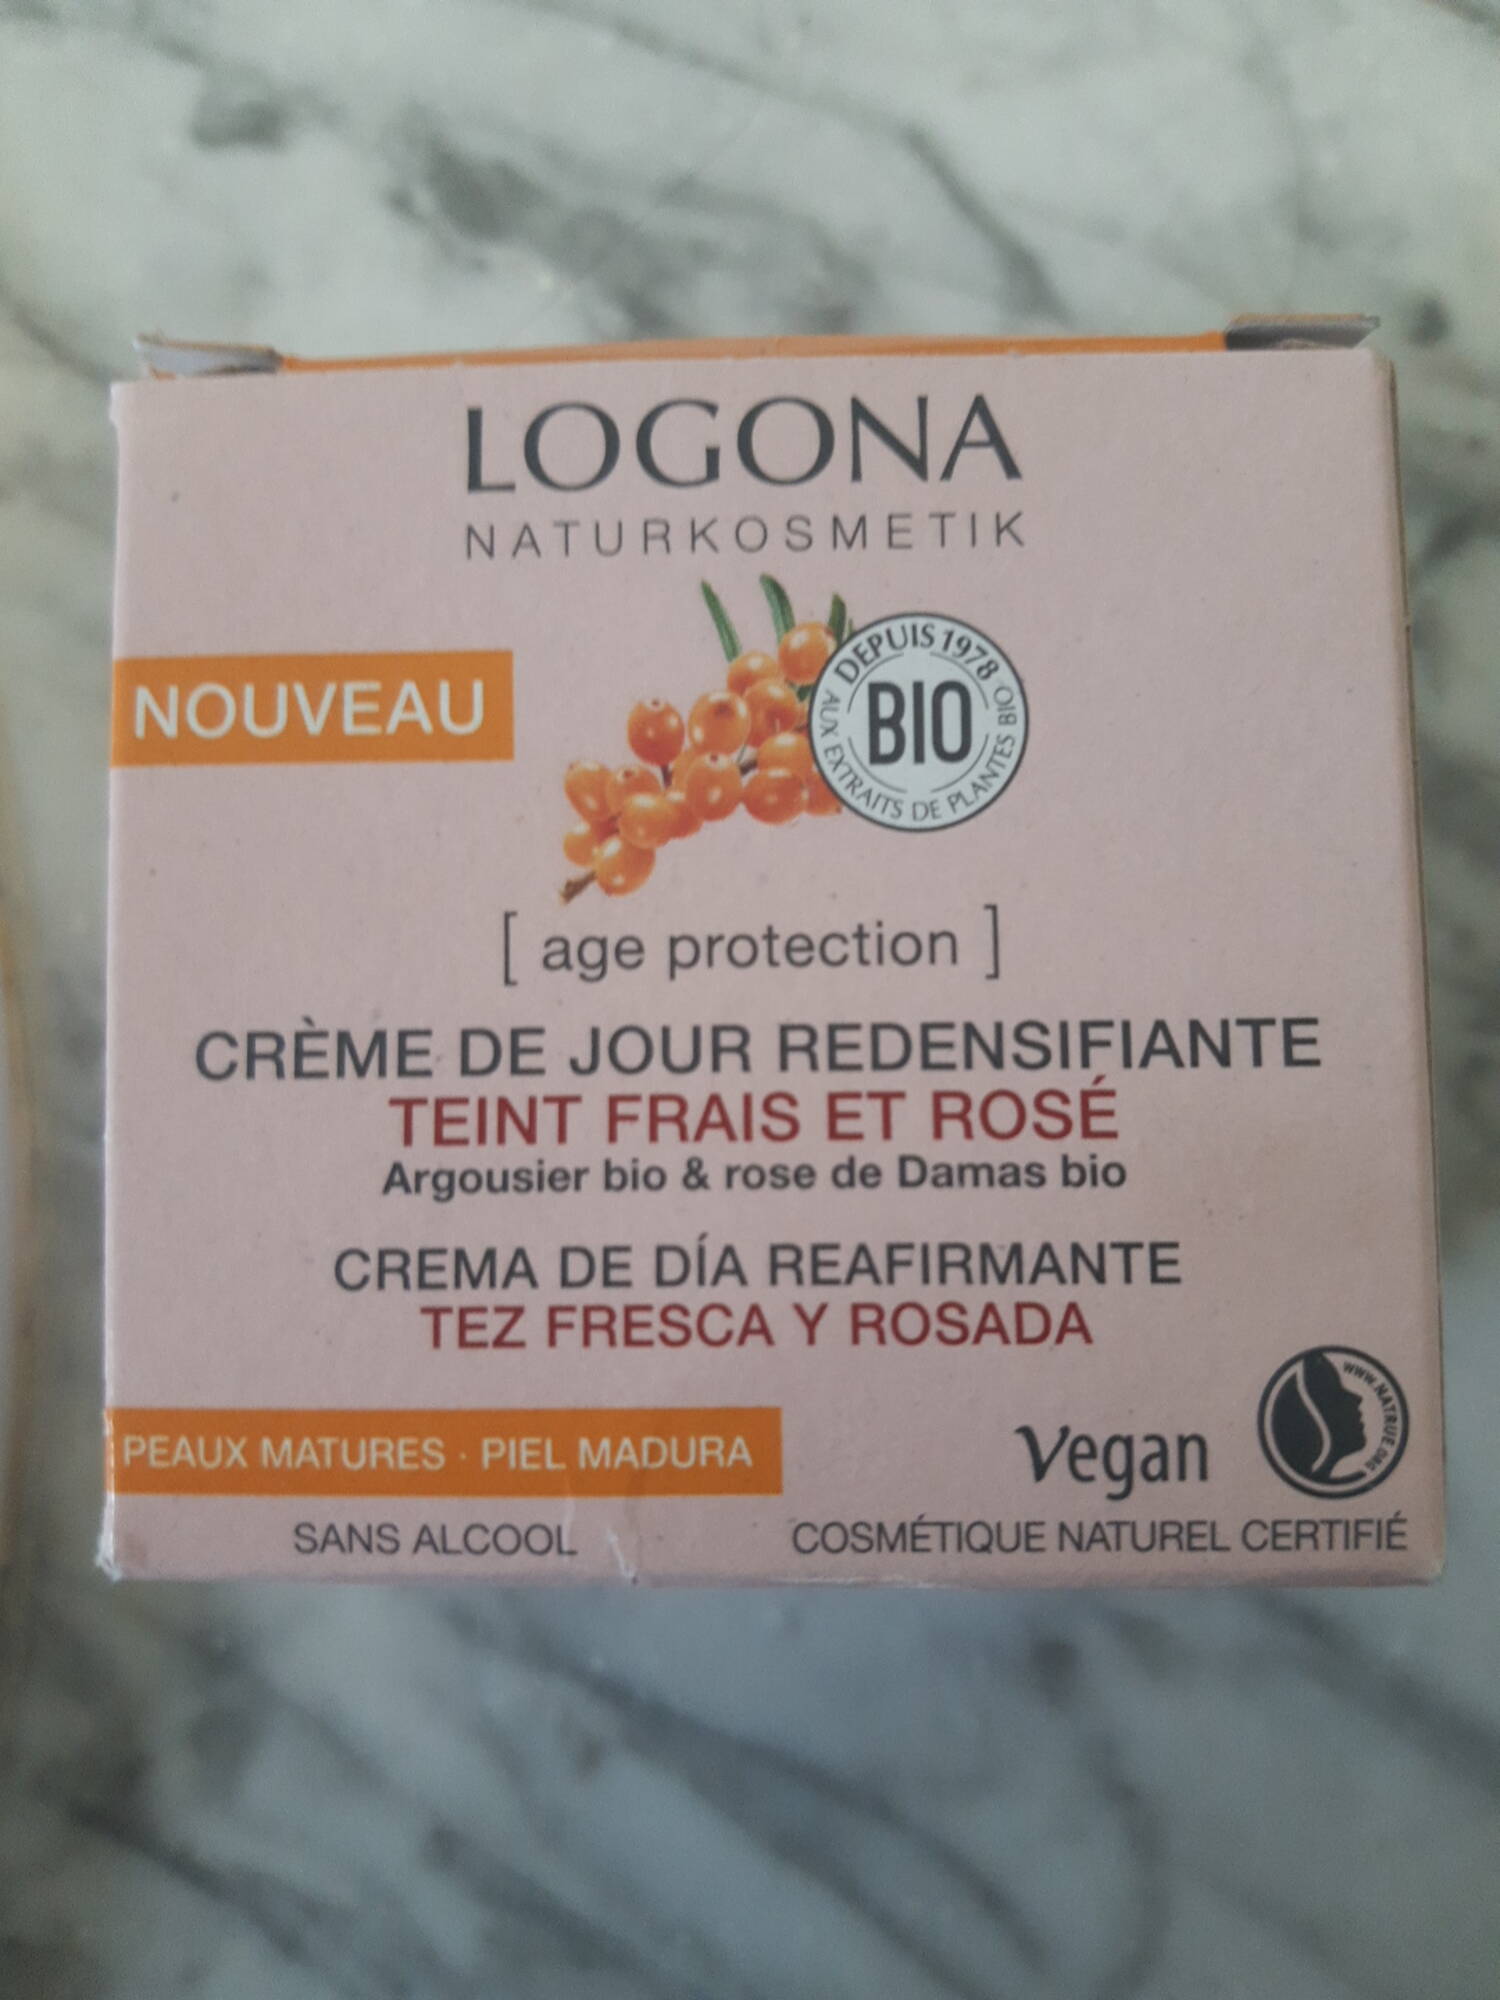 LOGONA - Teint frais et rosé - Crème de jour redensifiante 